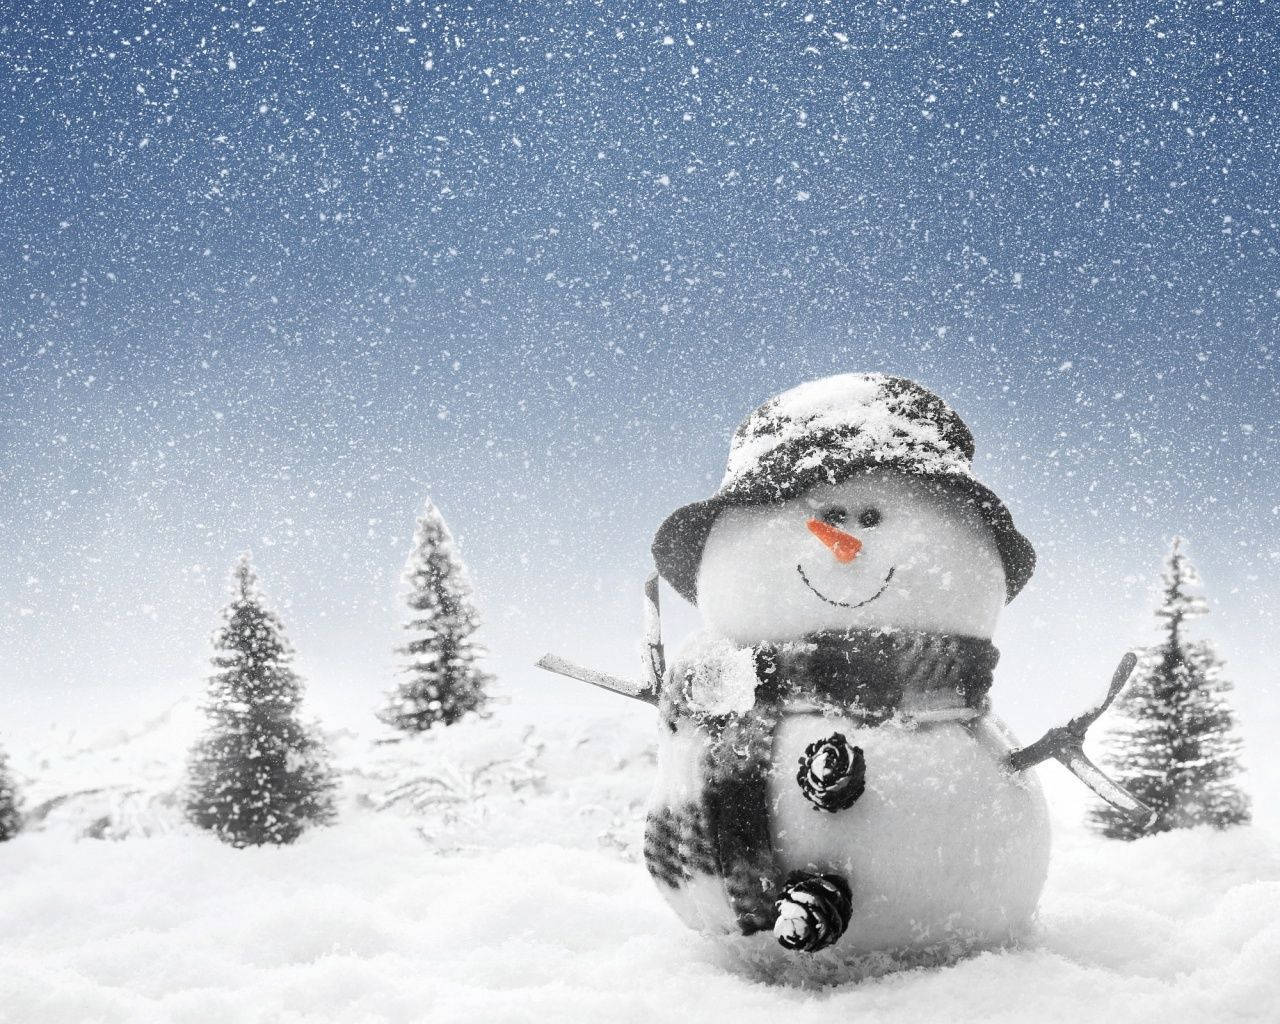 Snowman In Winter Wonderland